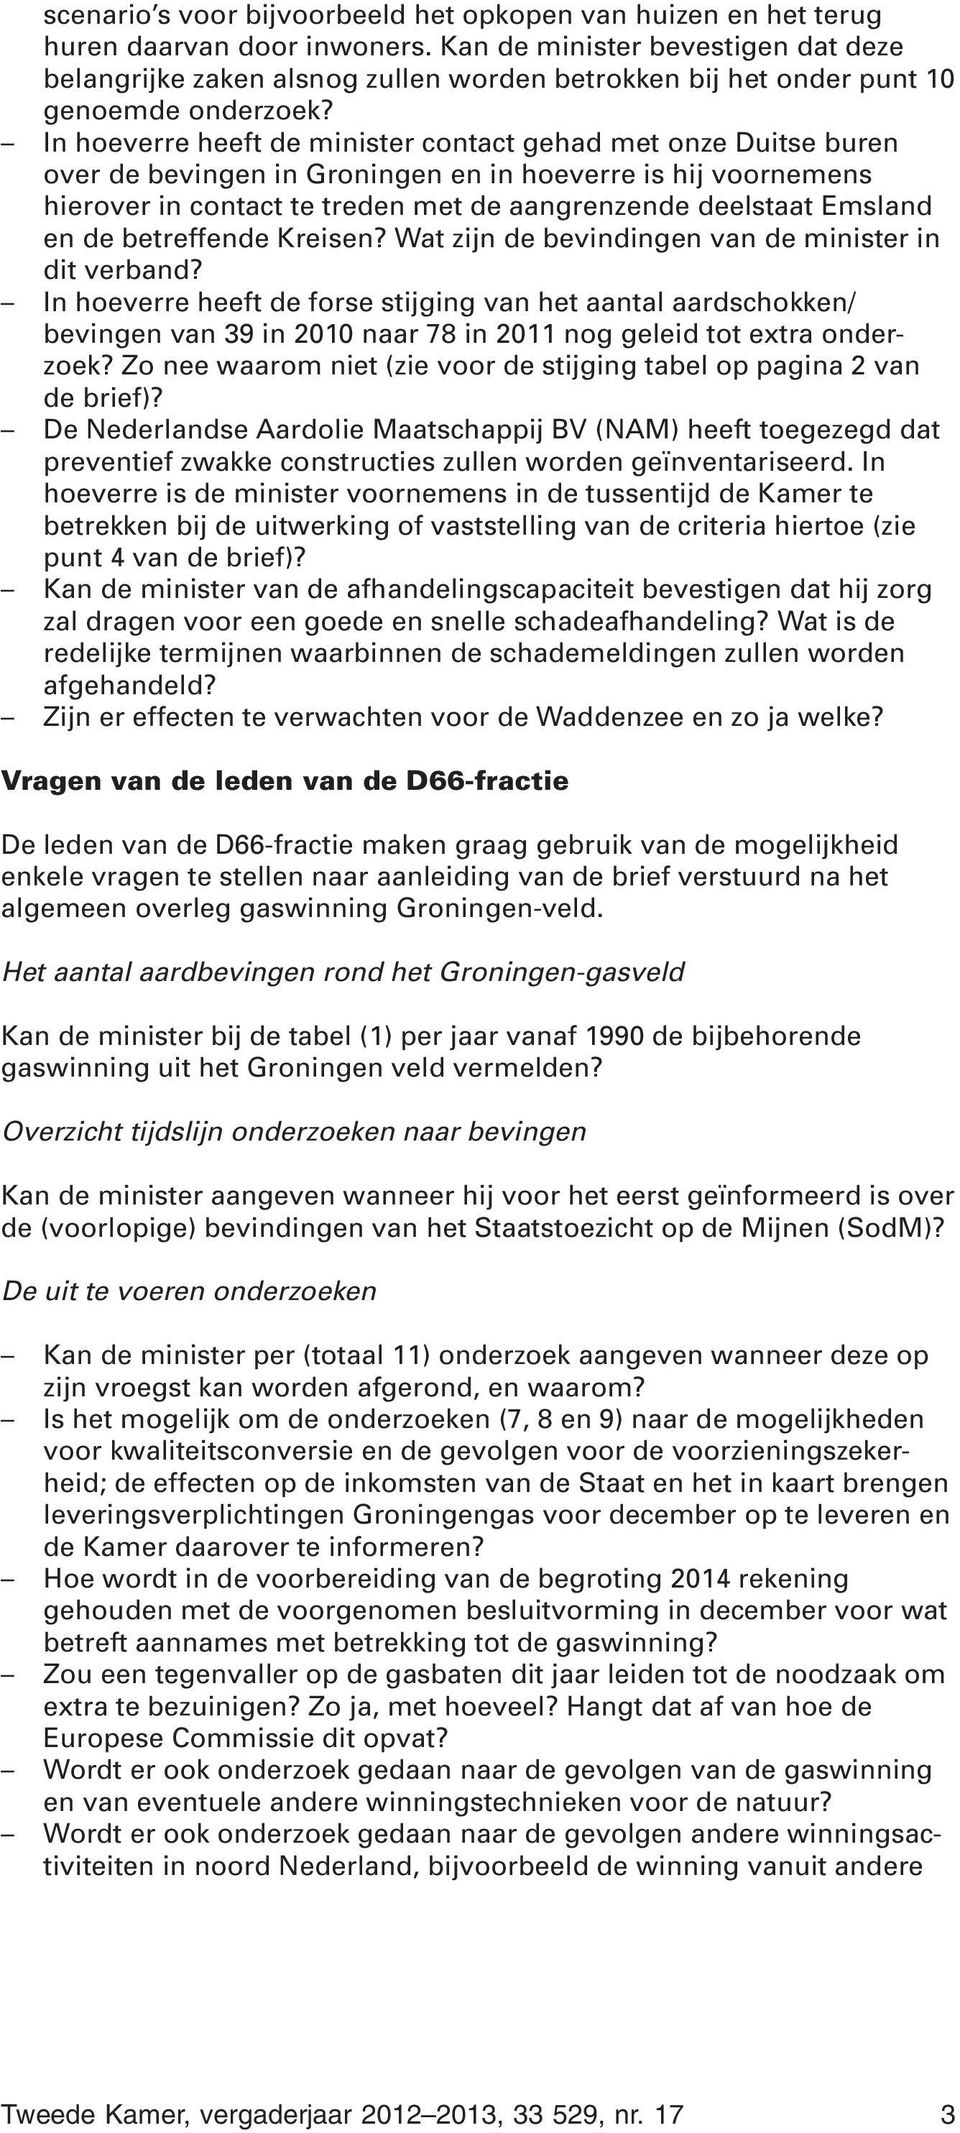 In hoeverre heeft de minister contact gehad met onze Duitse buren over de bevingen in Groningen en in hoeverre is hij voornemens hierover in contact te treden met de aangrenzende deelstaat Emsland en